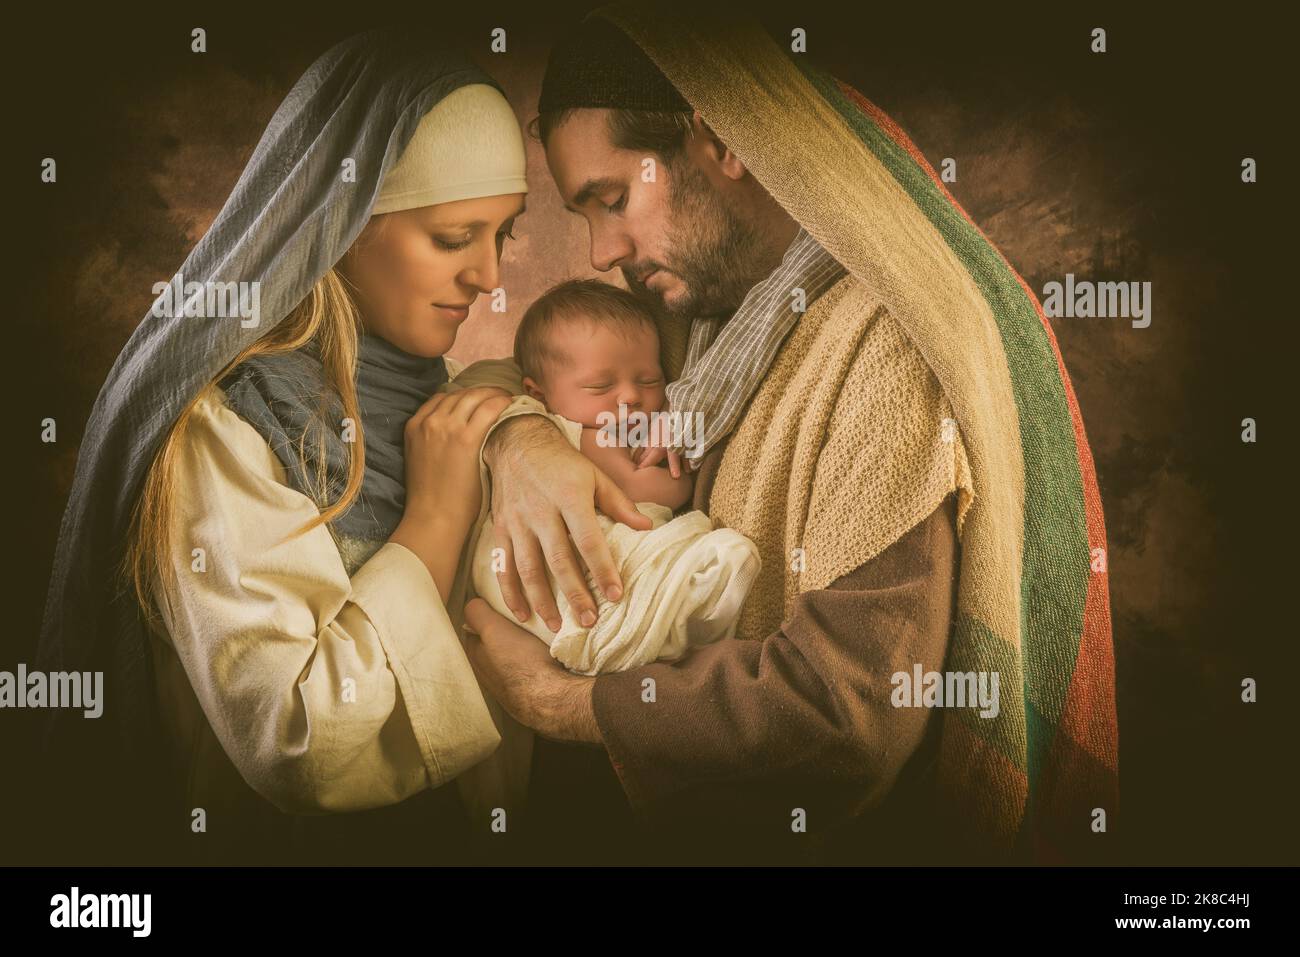 Fiers parents lors de la reconstitution d'une scène de fête de Noël avec leur propre bébé de 8 jours Banque D'Images